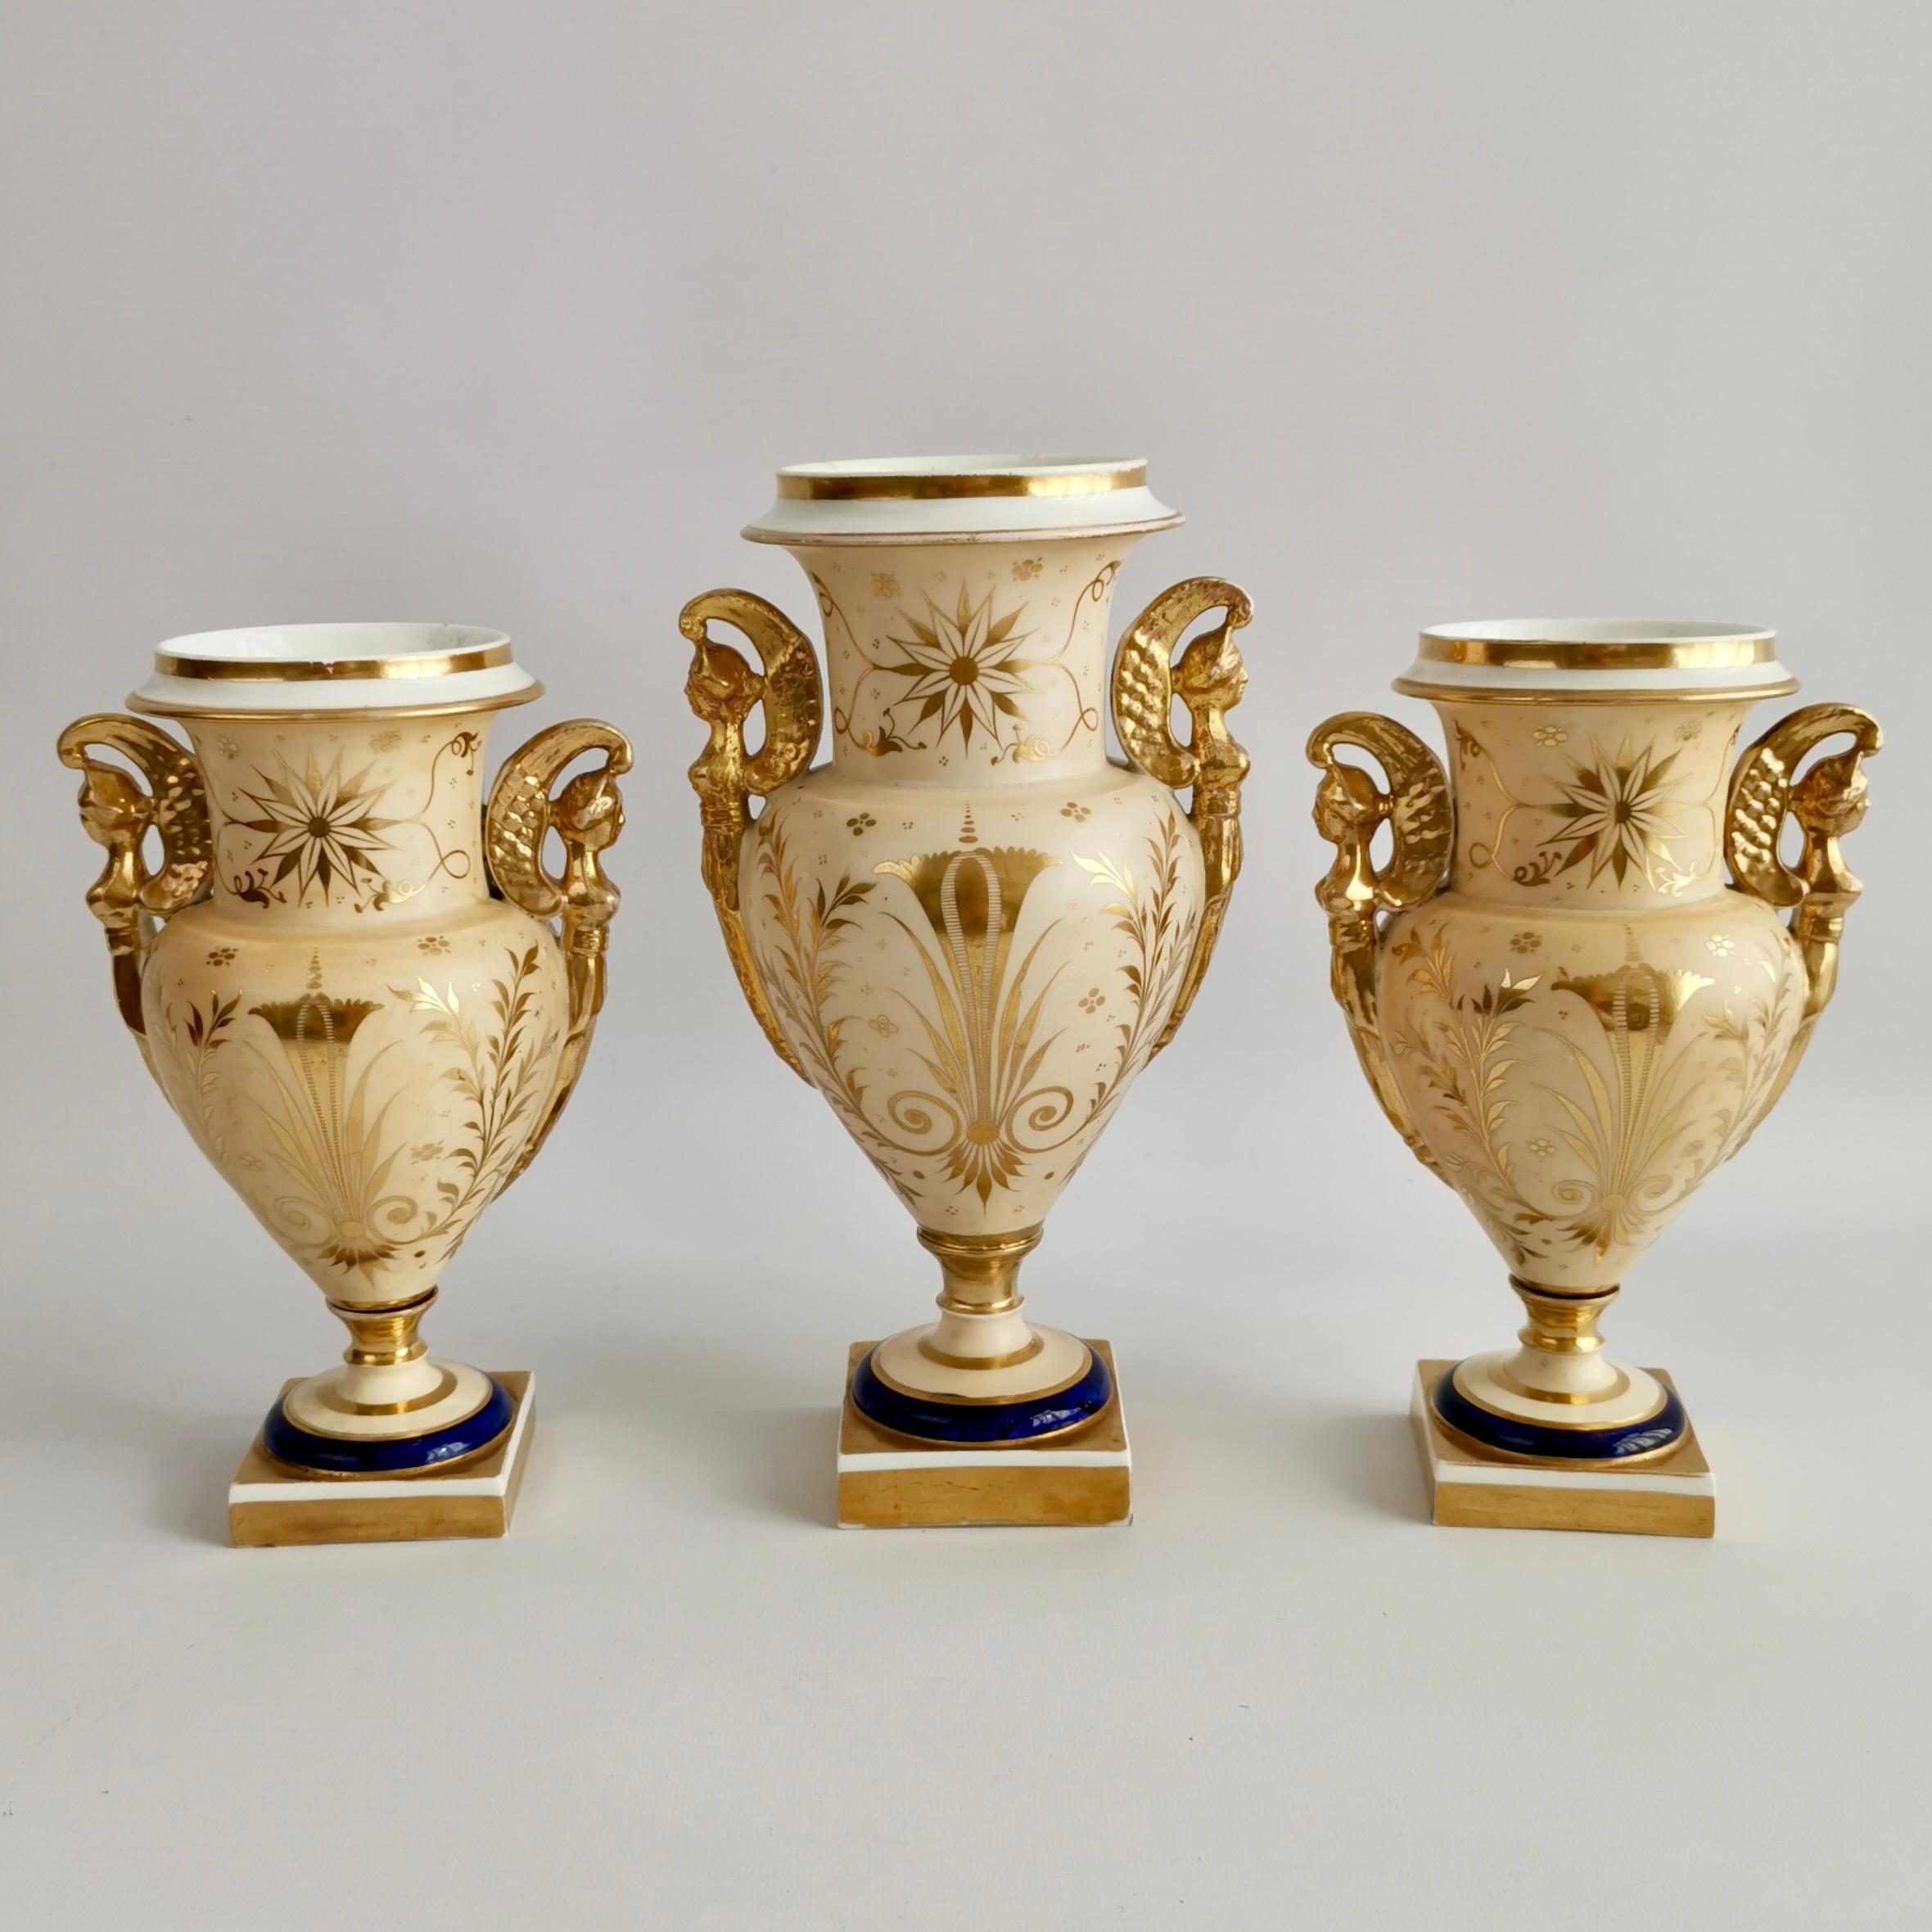 Regency English Garniture of 3 Vases, Empire Style, Provenance G.Godden, 1810-1815 For Sale